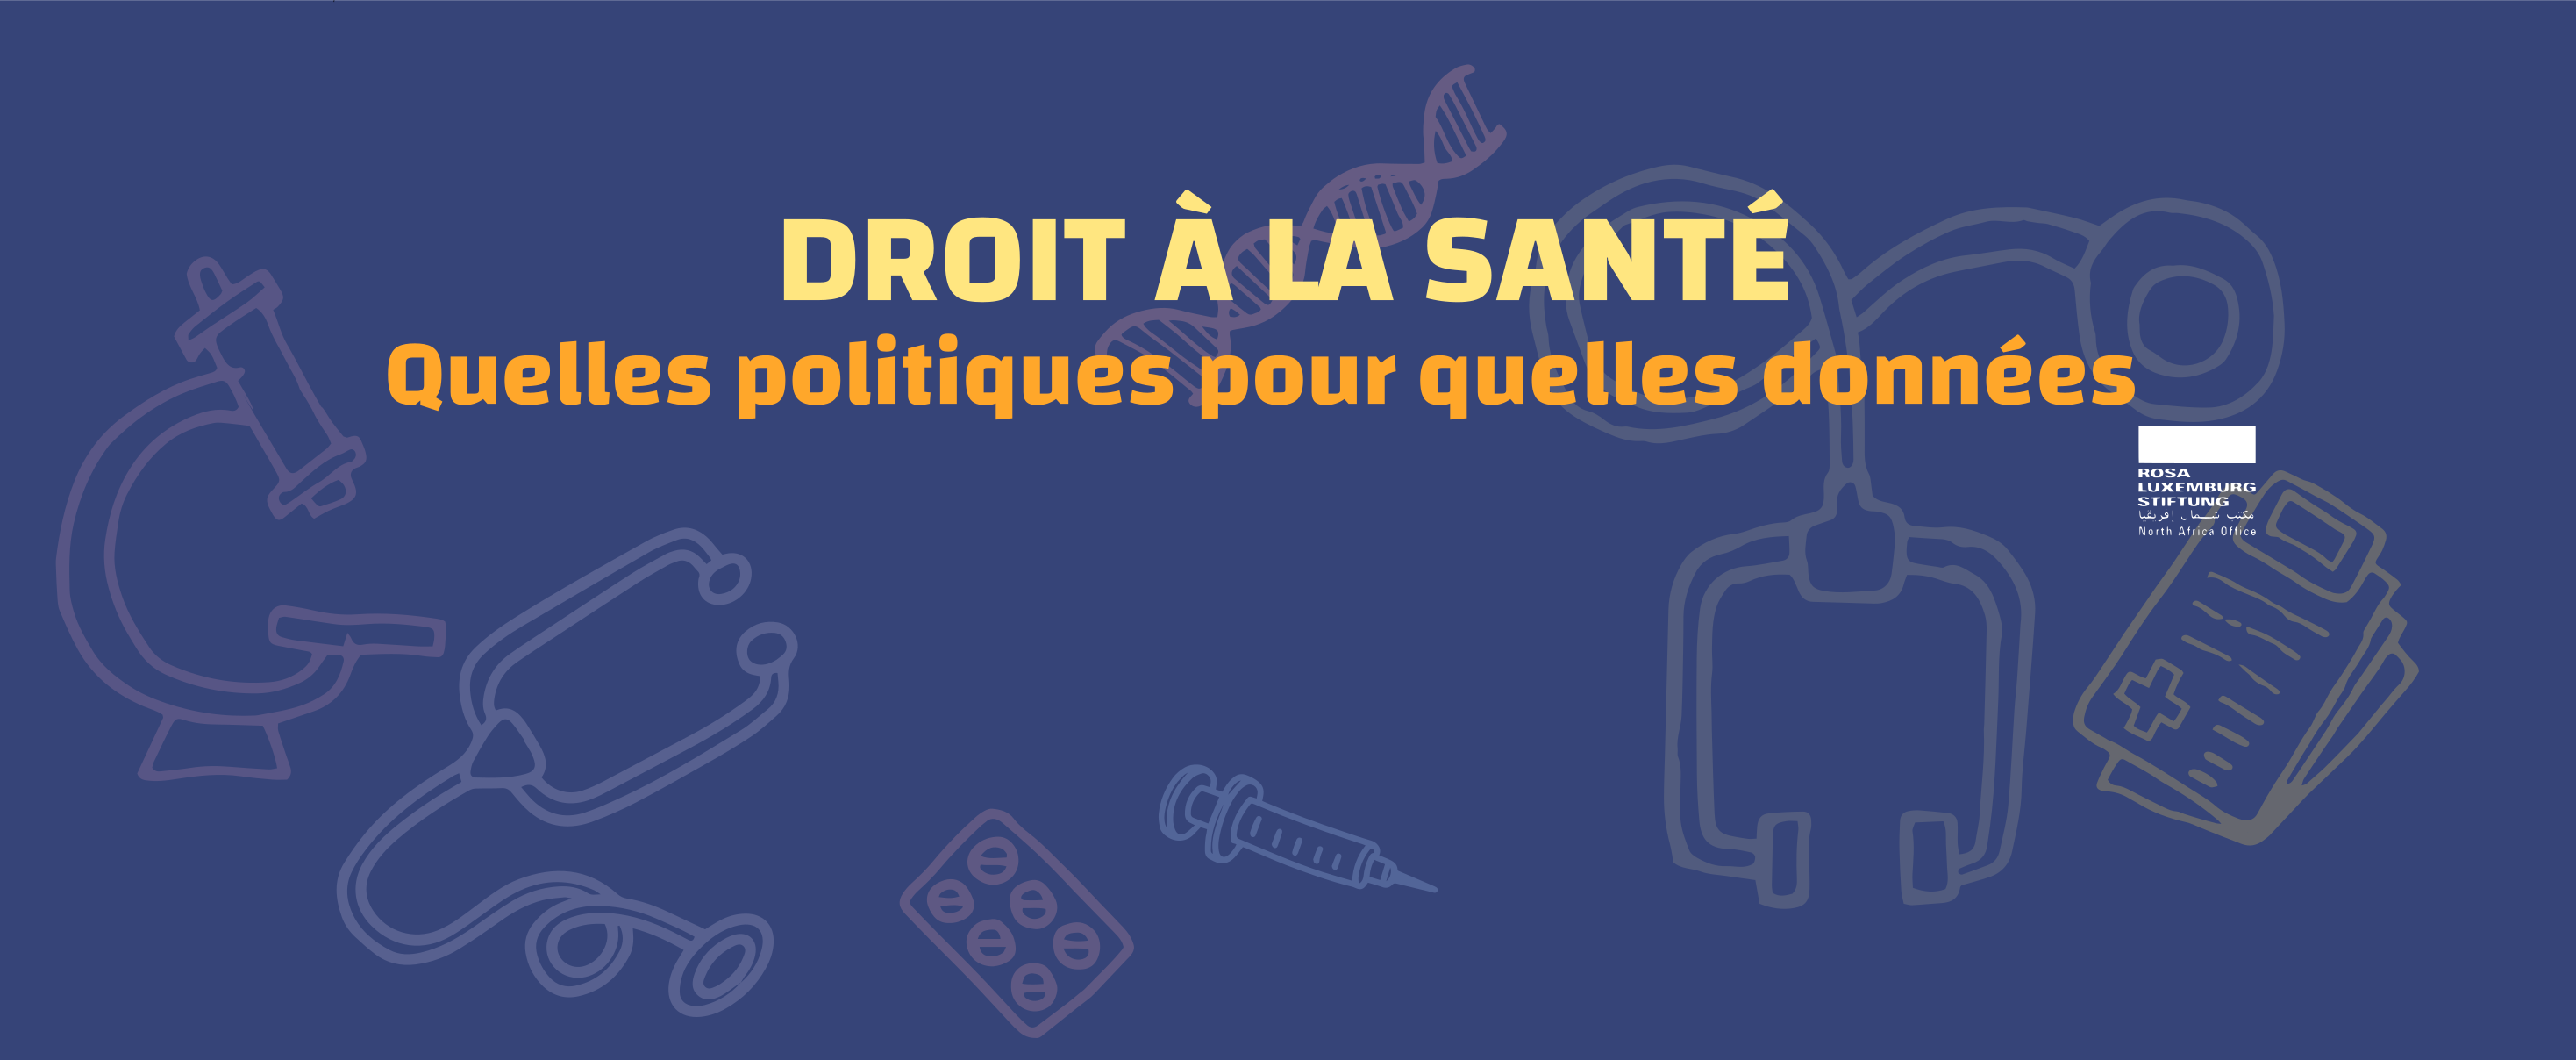 DROIT À LA SANTÉ :  QUELLES POLITIQUES POUR QUELLES DONNÉES?  – Rencontre OpenData #2